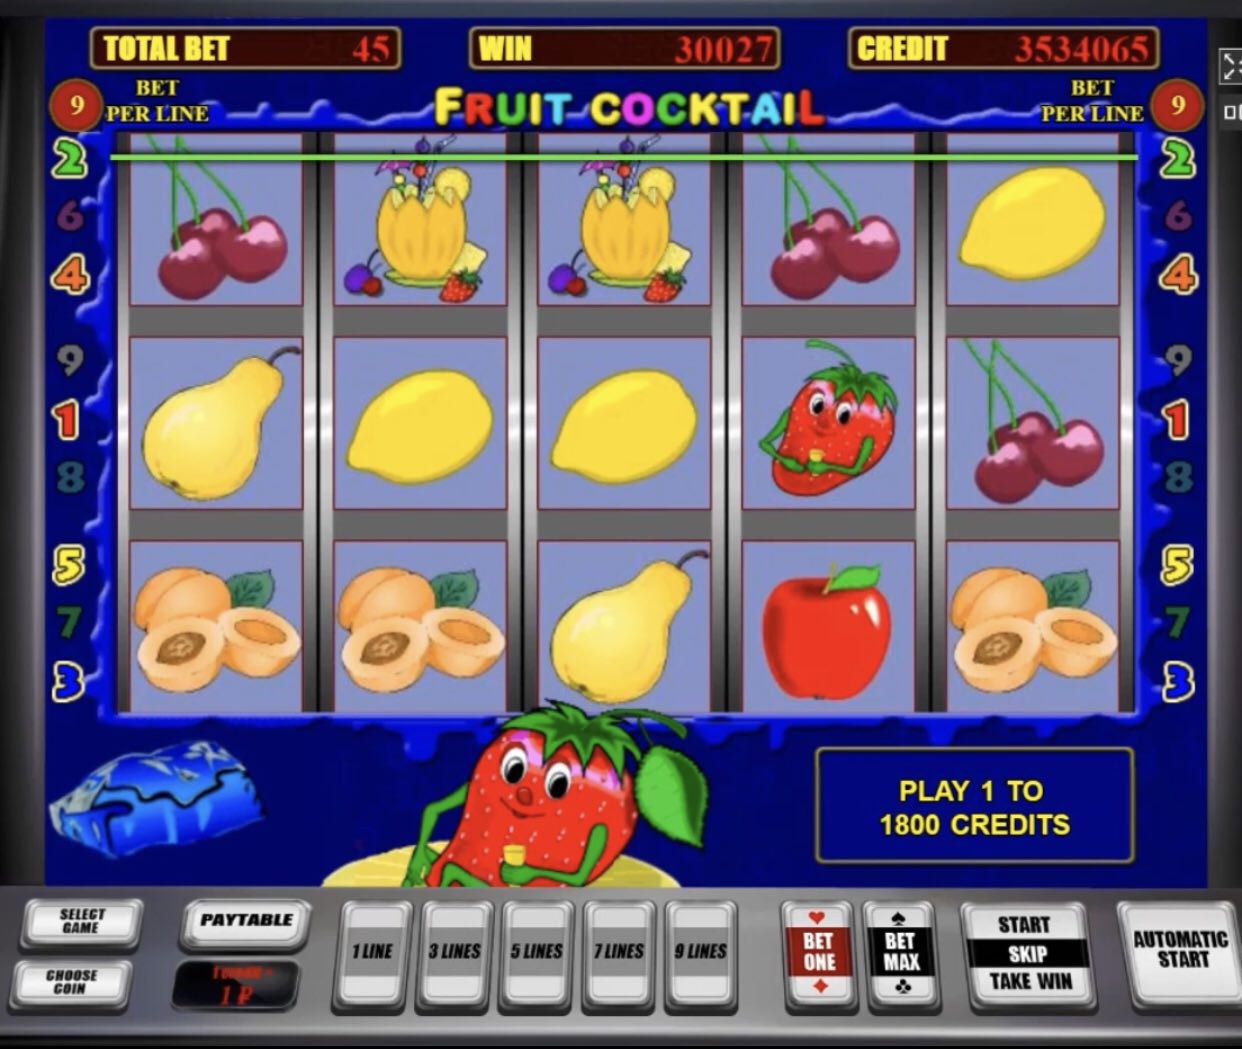 Секреты игровых автоматов fruit cocktail